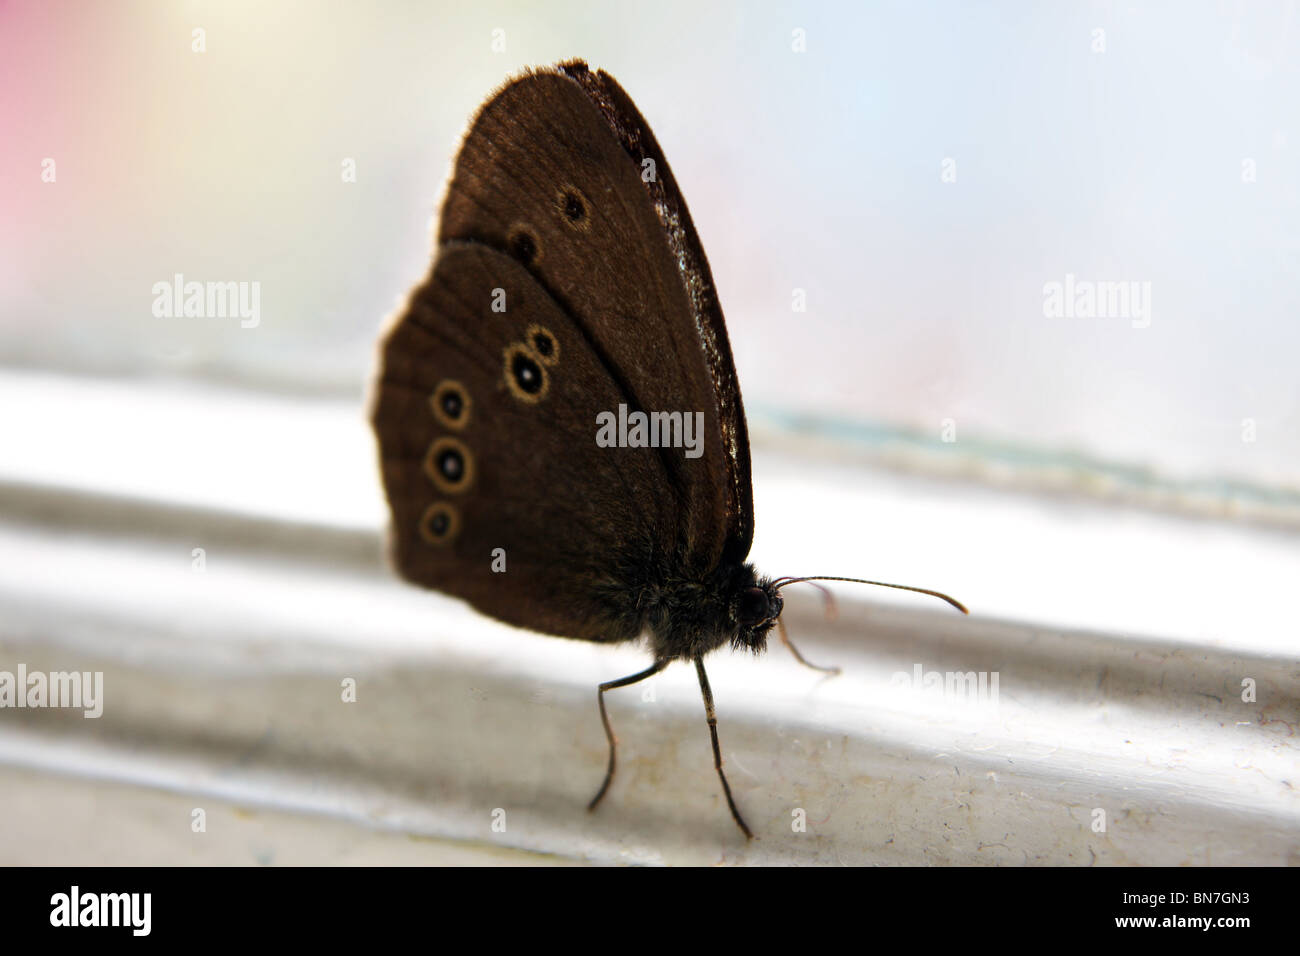 Una pradera común mariposa marrón en una repisa de la ventana Foto de stock